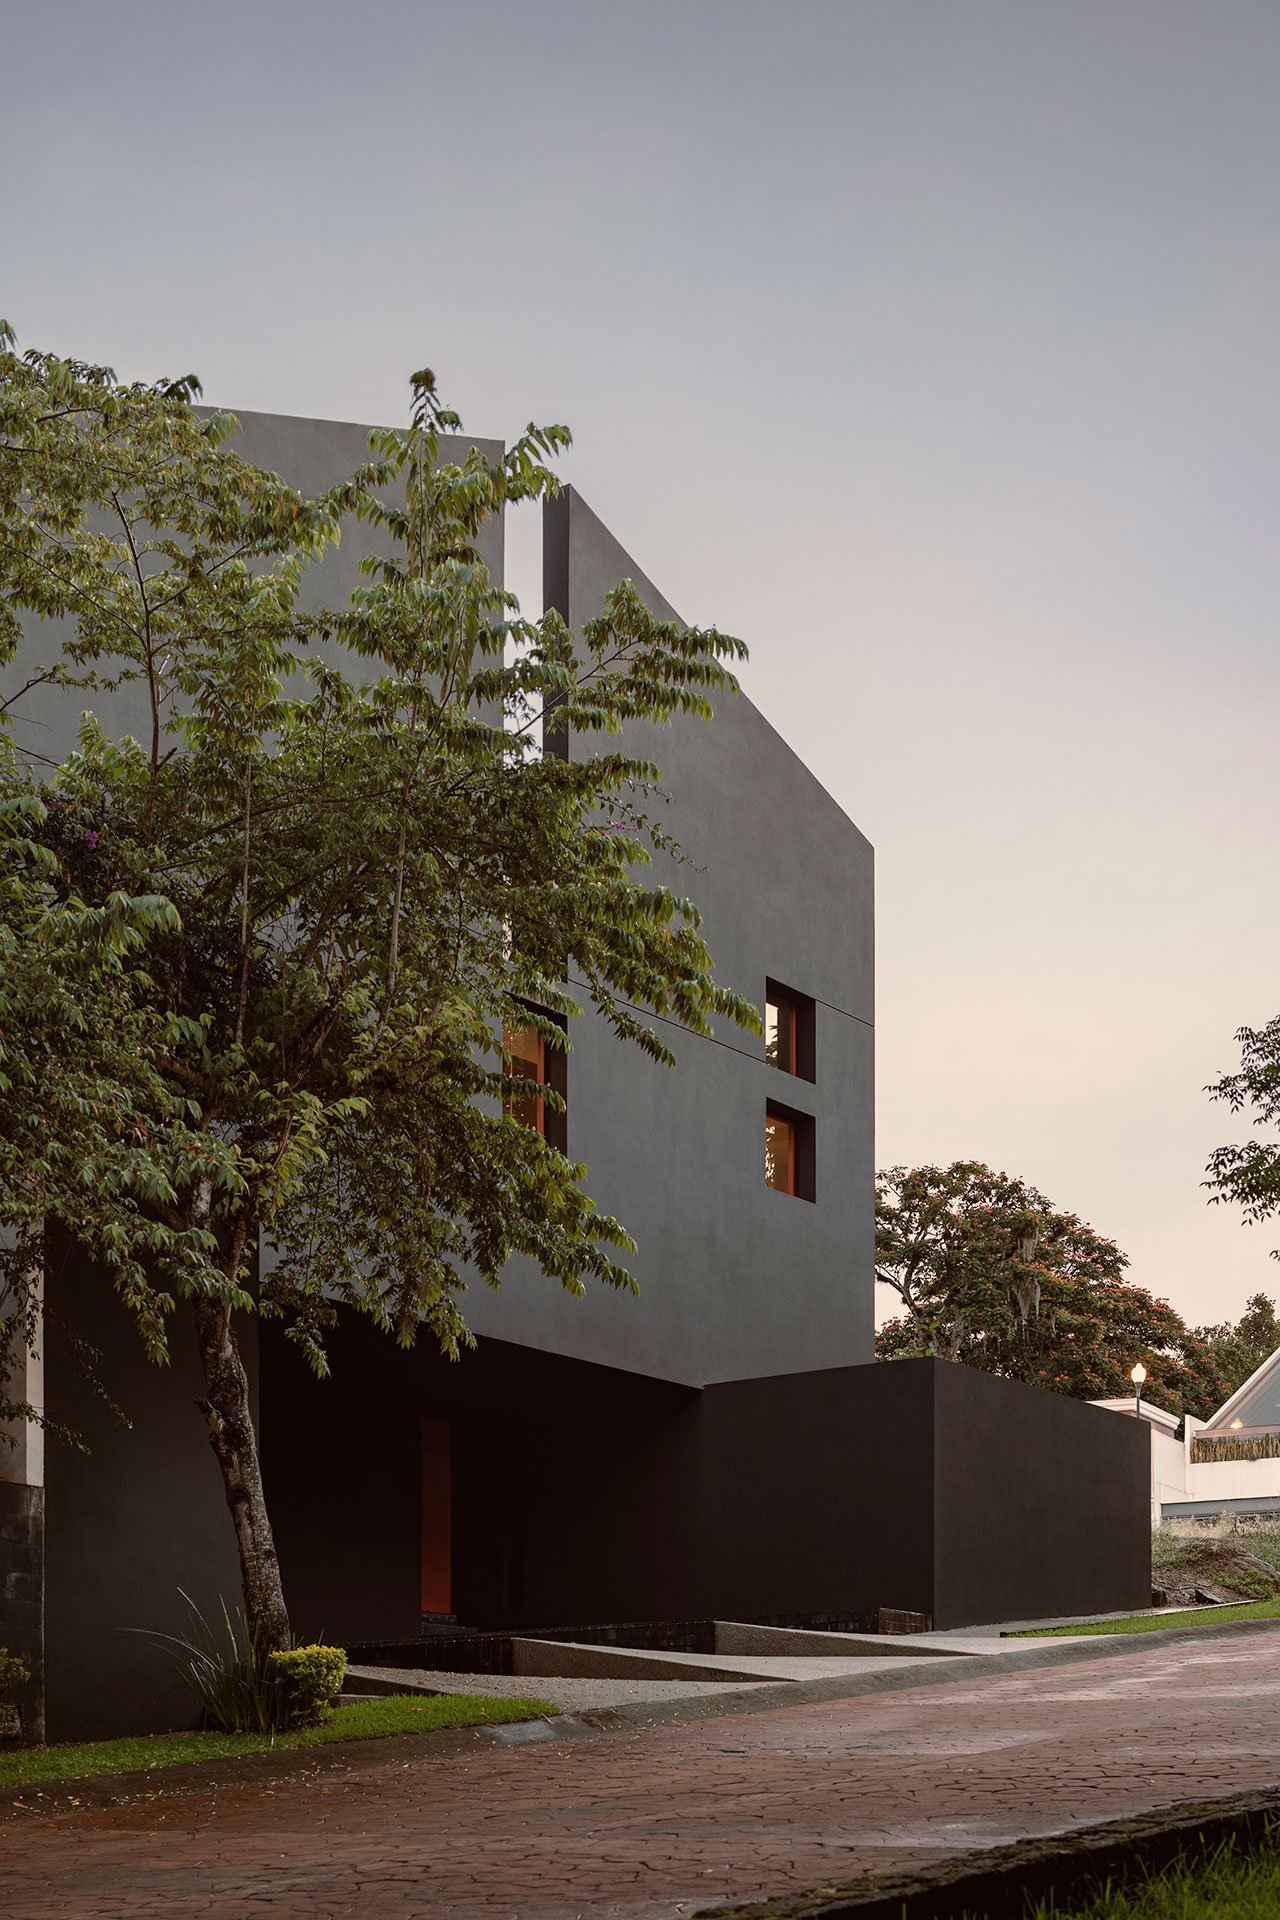 Ngôi nhà này được ví như là một công trình nguyên khối xuyên qua bởi một cấu trúc bất thường với các khung cửa sổ đỏ trên phông nền đen. 